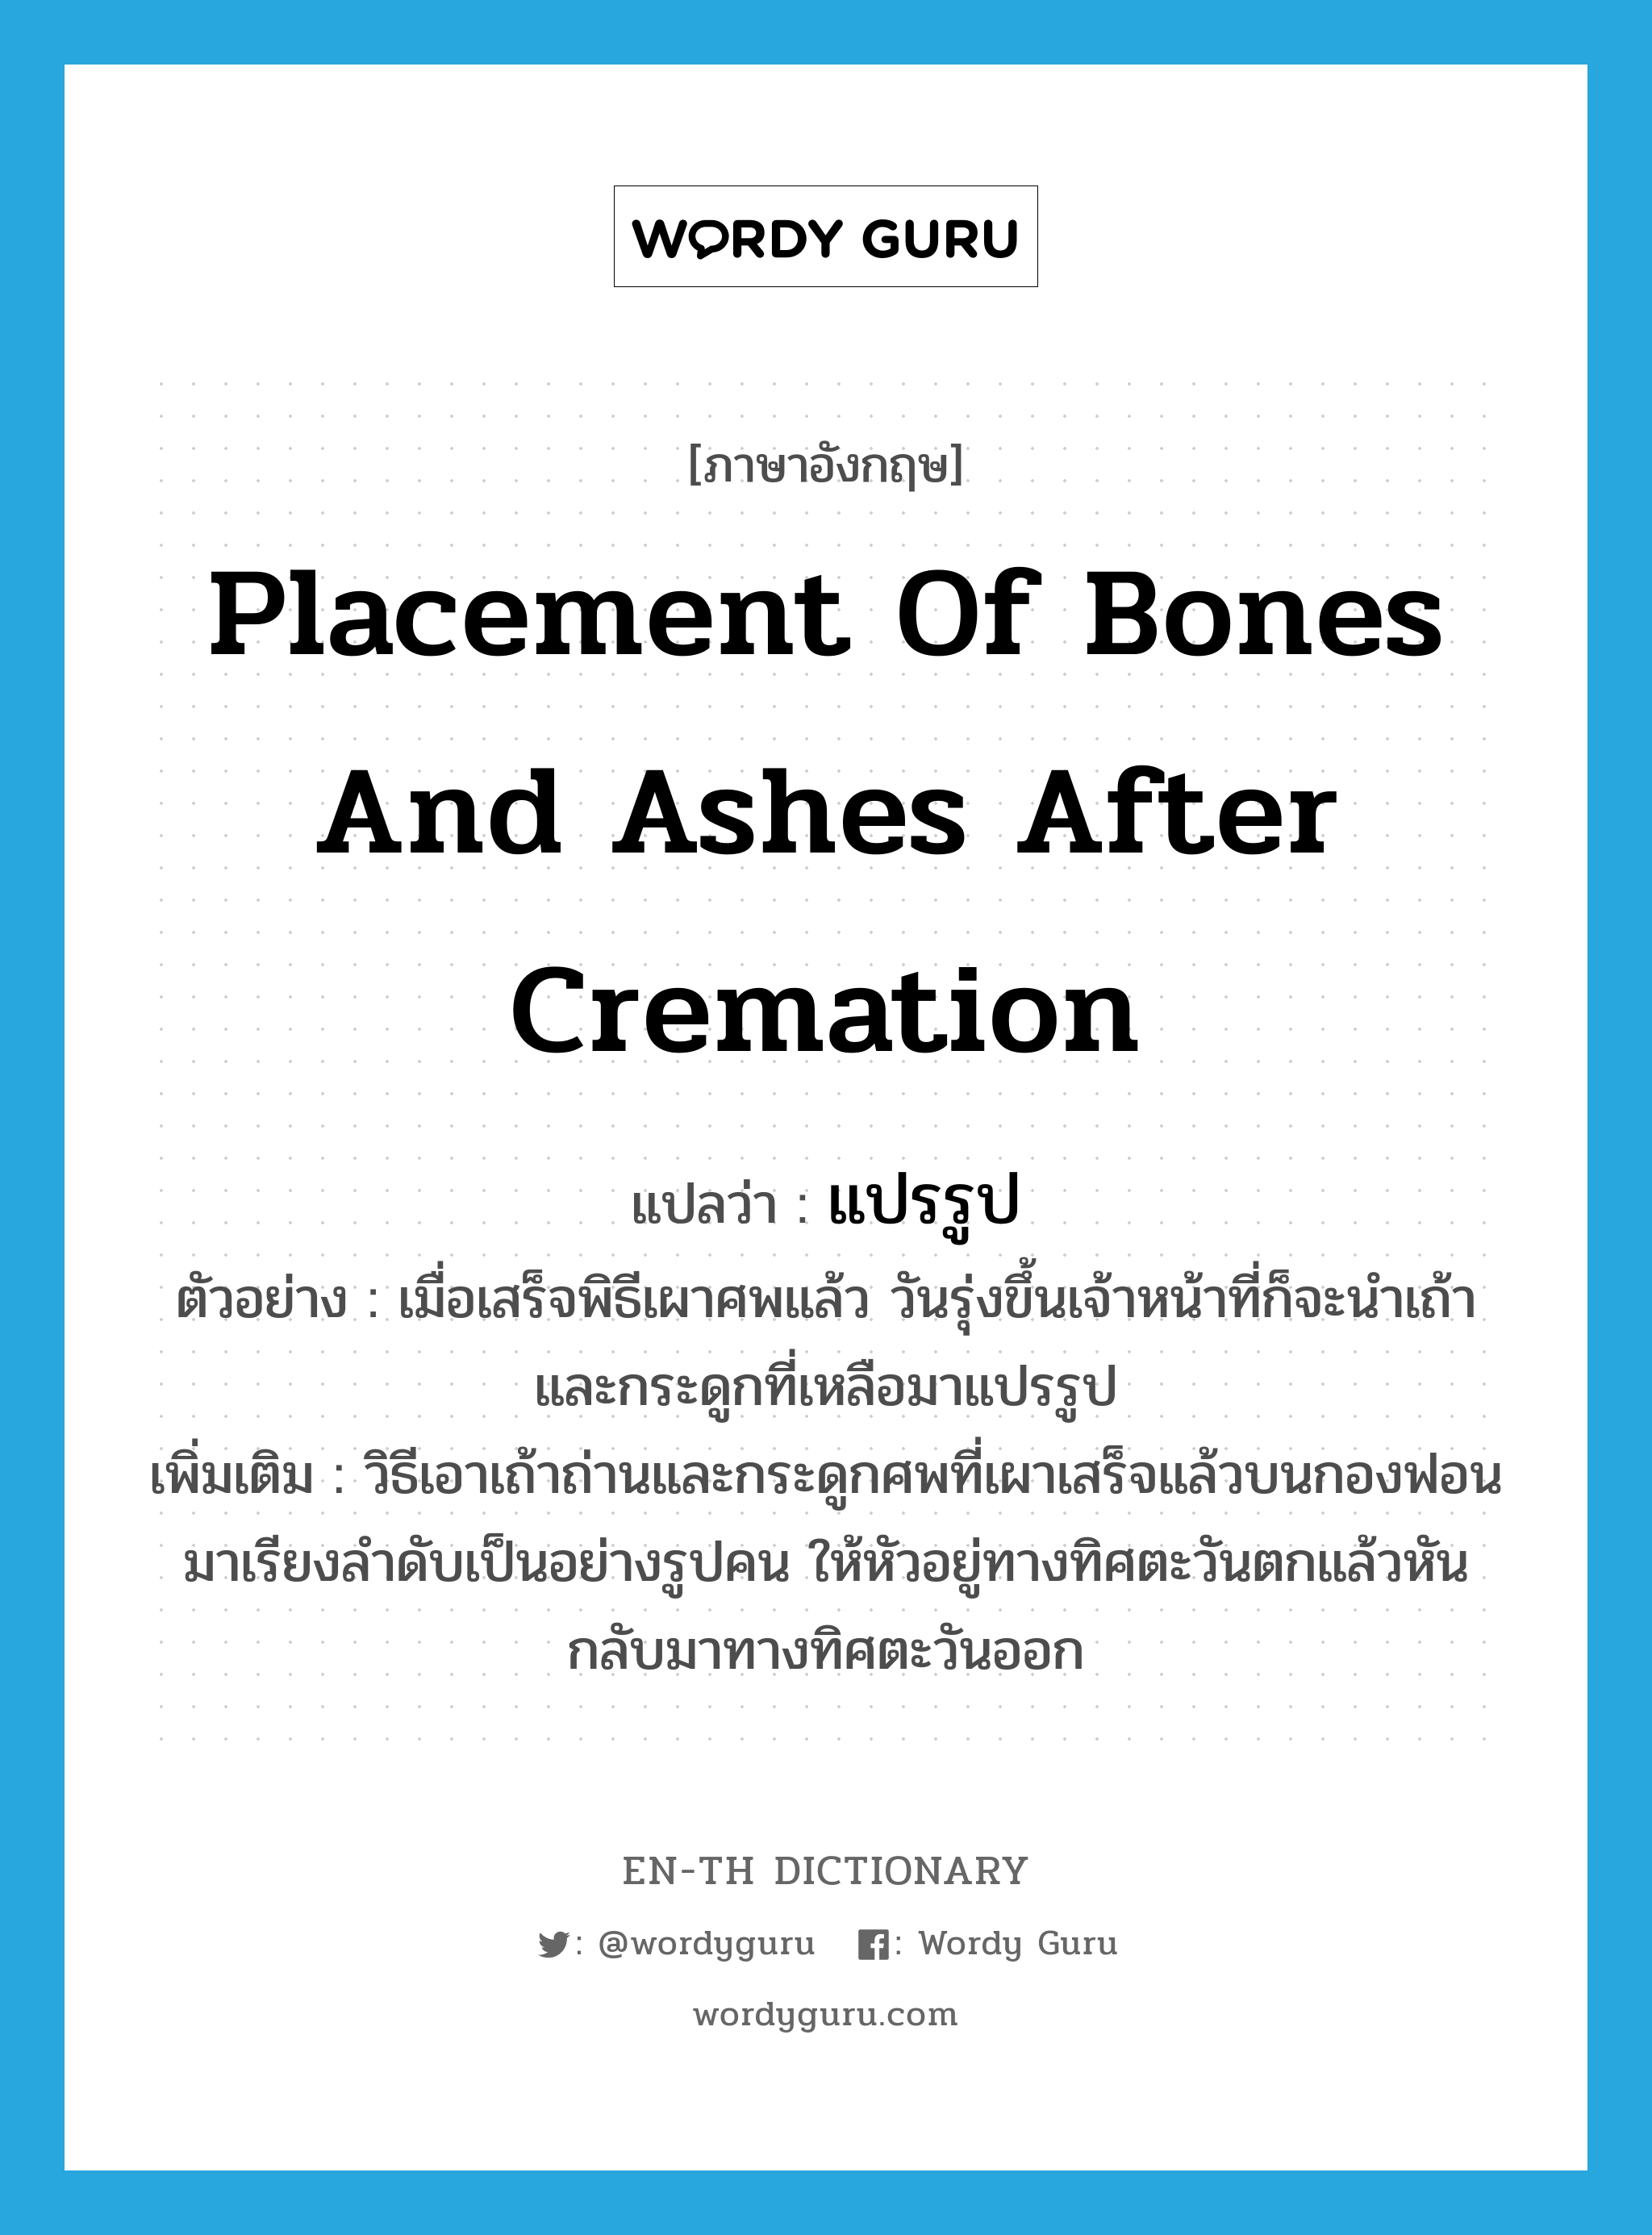 placement of bones and ashes after cremation แปลว่า?, คำศัพท์ภาษาอังกฤษ placement of bones and ashes after cremation แปลว่า แปรรูป ประเภท N ตัวอย่าง เมื่อเสร็จพิธีเผาศพแล้ว วันรุ่งขึ้นเจ้าหน้าที่ก็จะนำเถ้าและกระดูกที่เหลือมาแปรรูป เพิ่มเติม วิธีเอาเถ้าถ่านและกระดูกศพที่เผาเสร็จแล้วบนกองฟอนมาเรียงลำดับเป็นอย่างรูปคน ให้หัวอยู่ทางทิศตะวันตกแล้วหันกลับมาทางทิศตะวันออก หมวด N